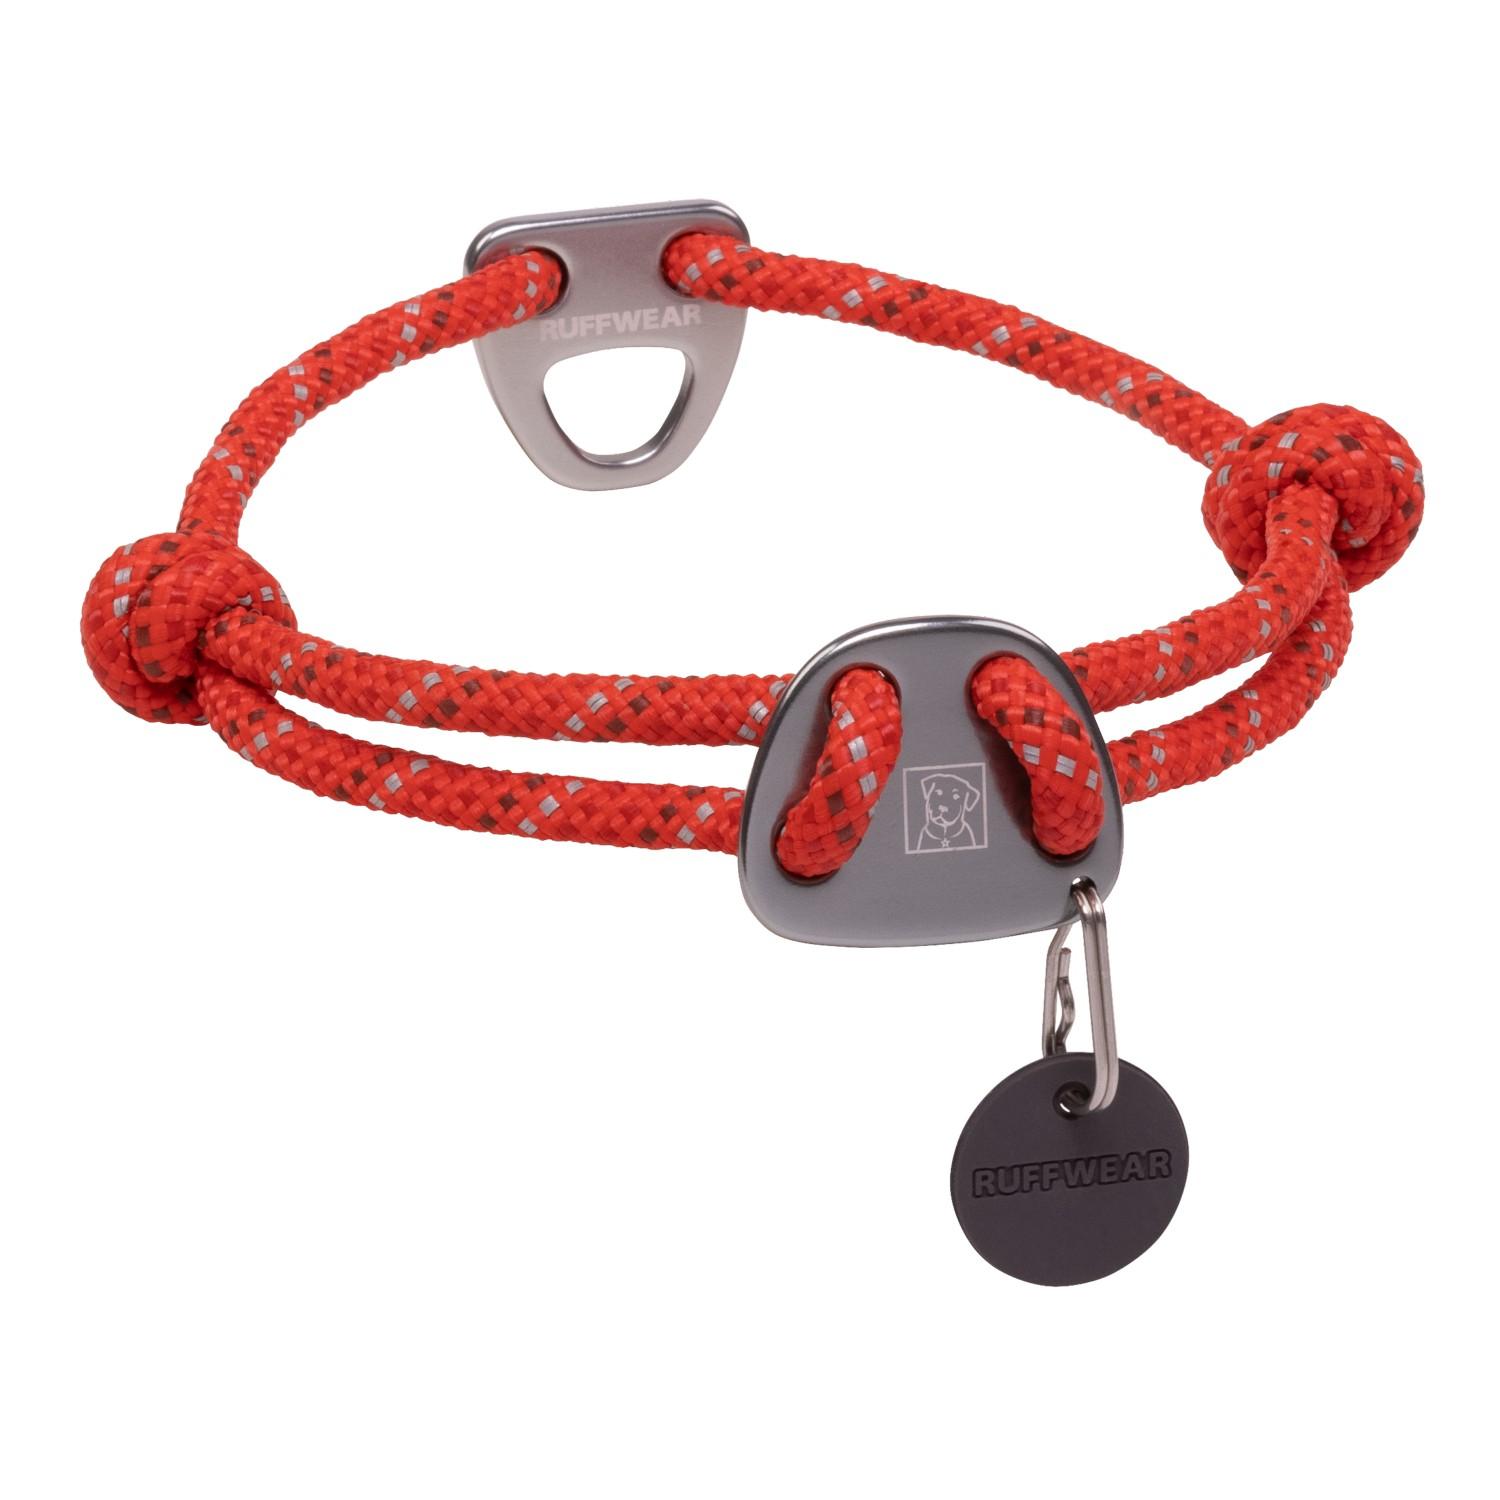 Knot-A-Collar Dog Collar by RuffWear - Red Sumac